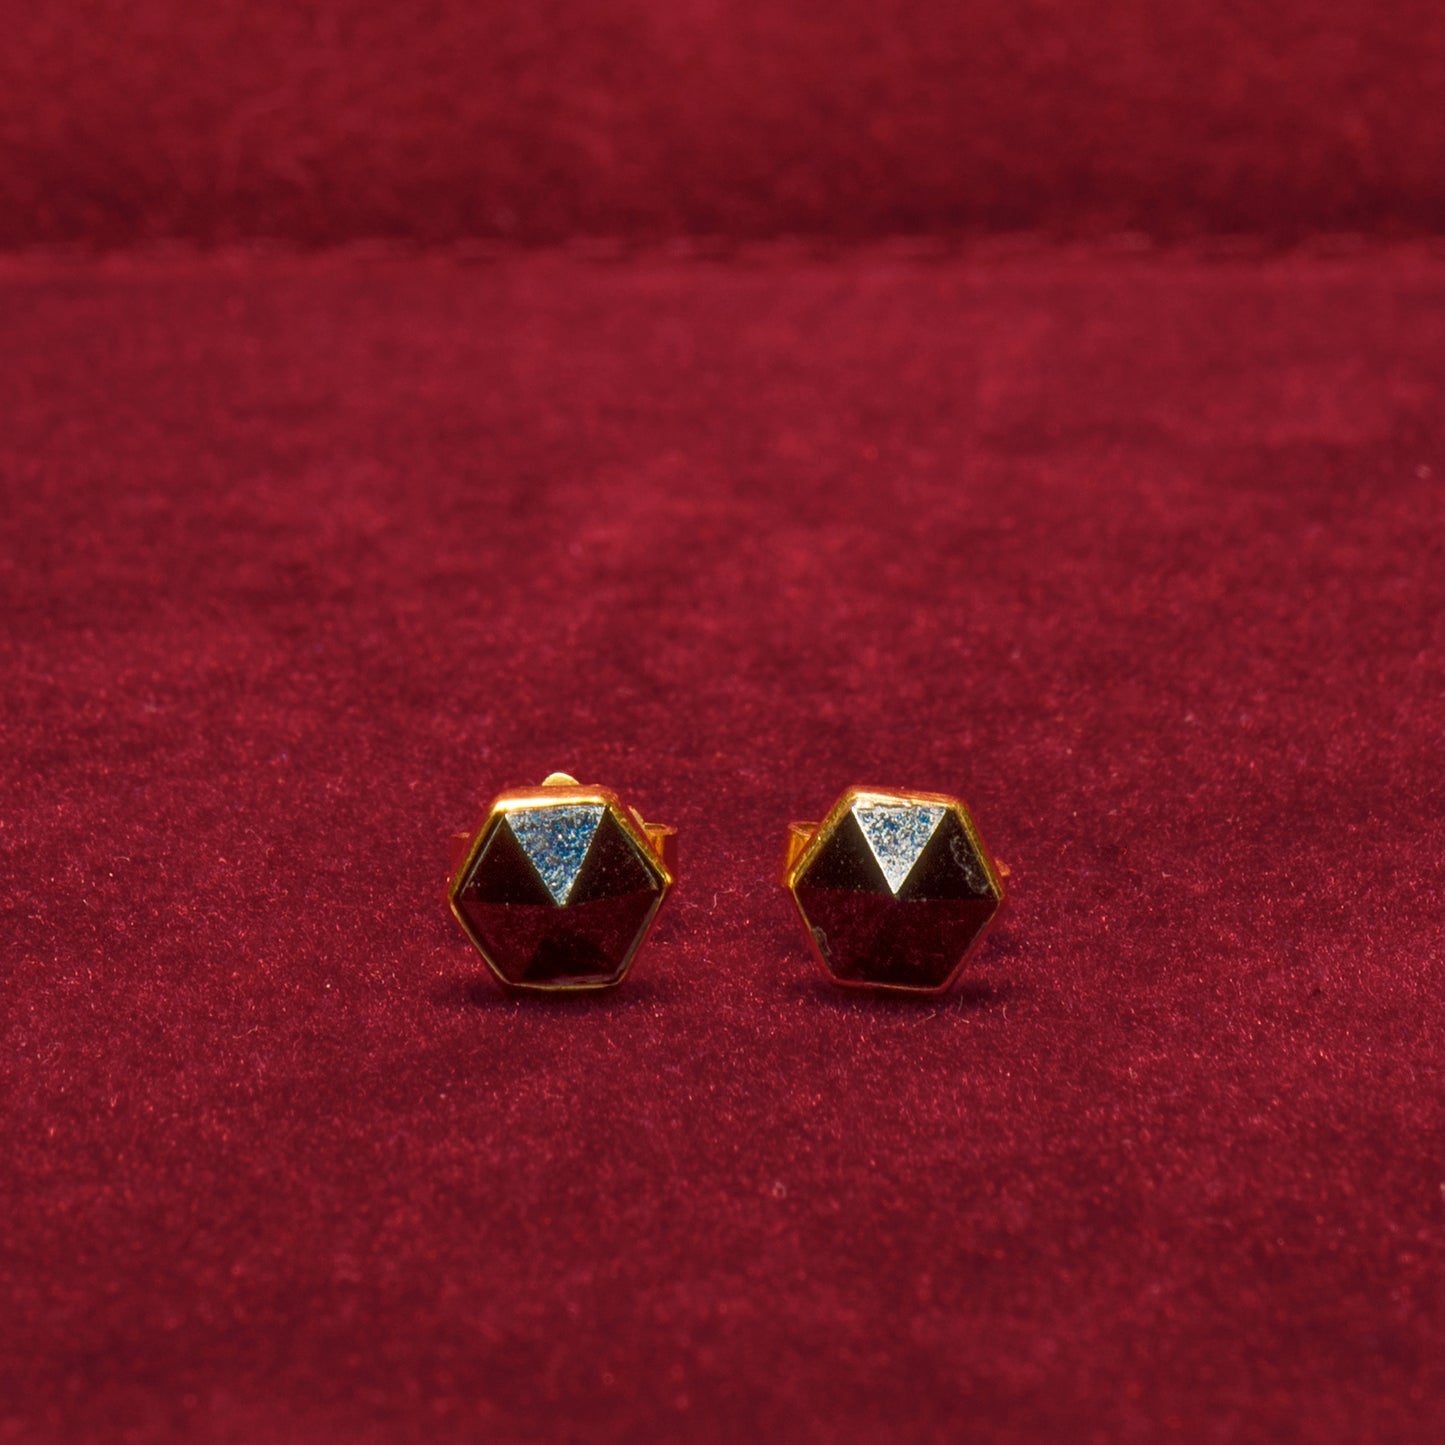 22k Gold stud earrings with garnets